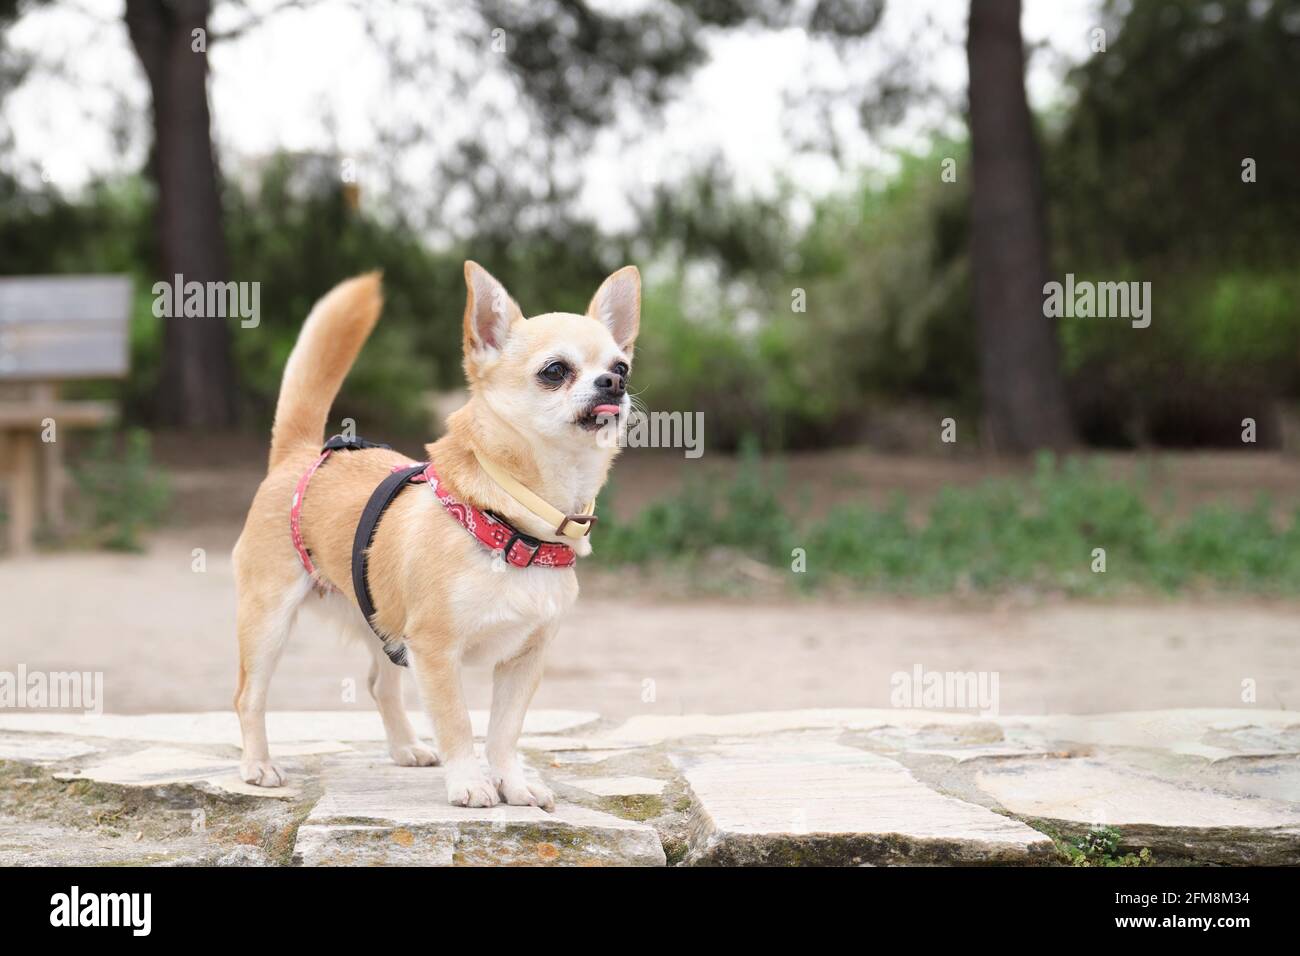 Chihuahua mit der Zunge, die in einem Park in einem Geschirr hängt. Kleiner weißer und brauner Hund. Stockfoto